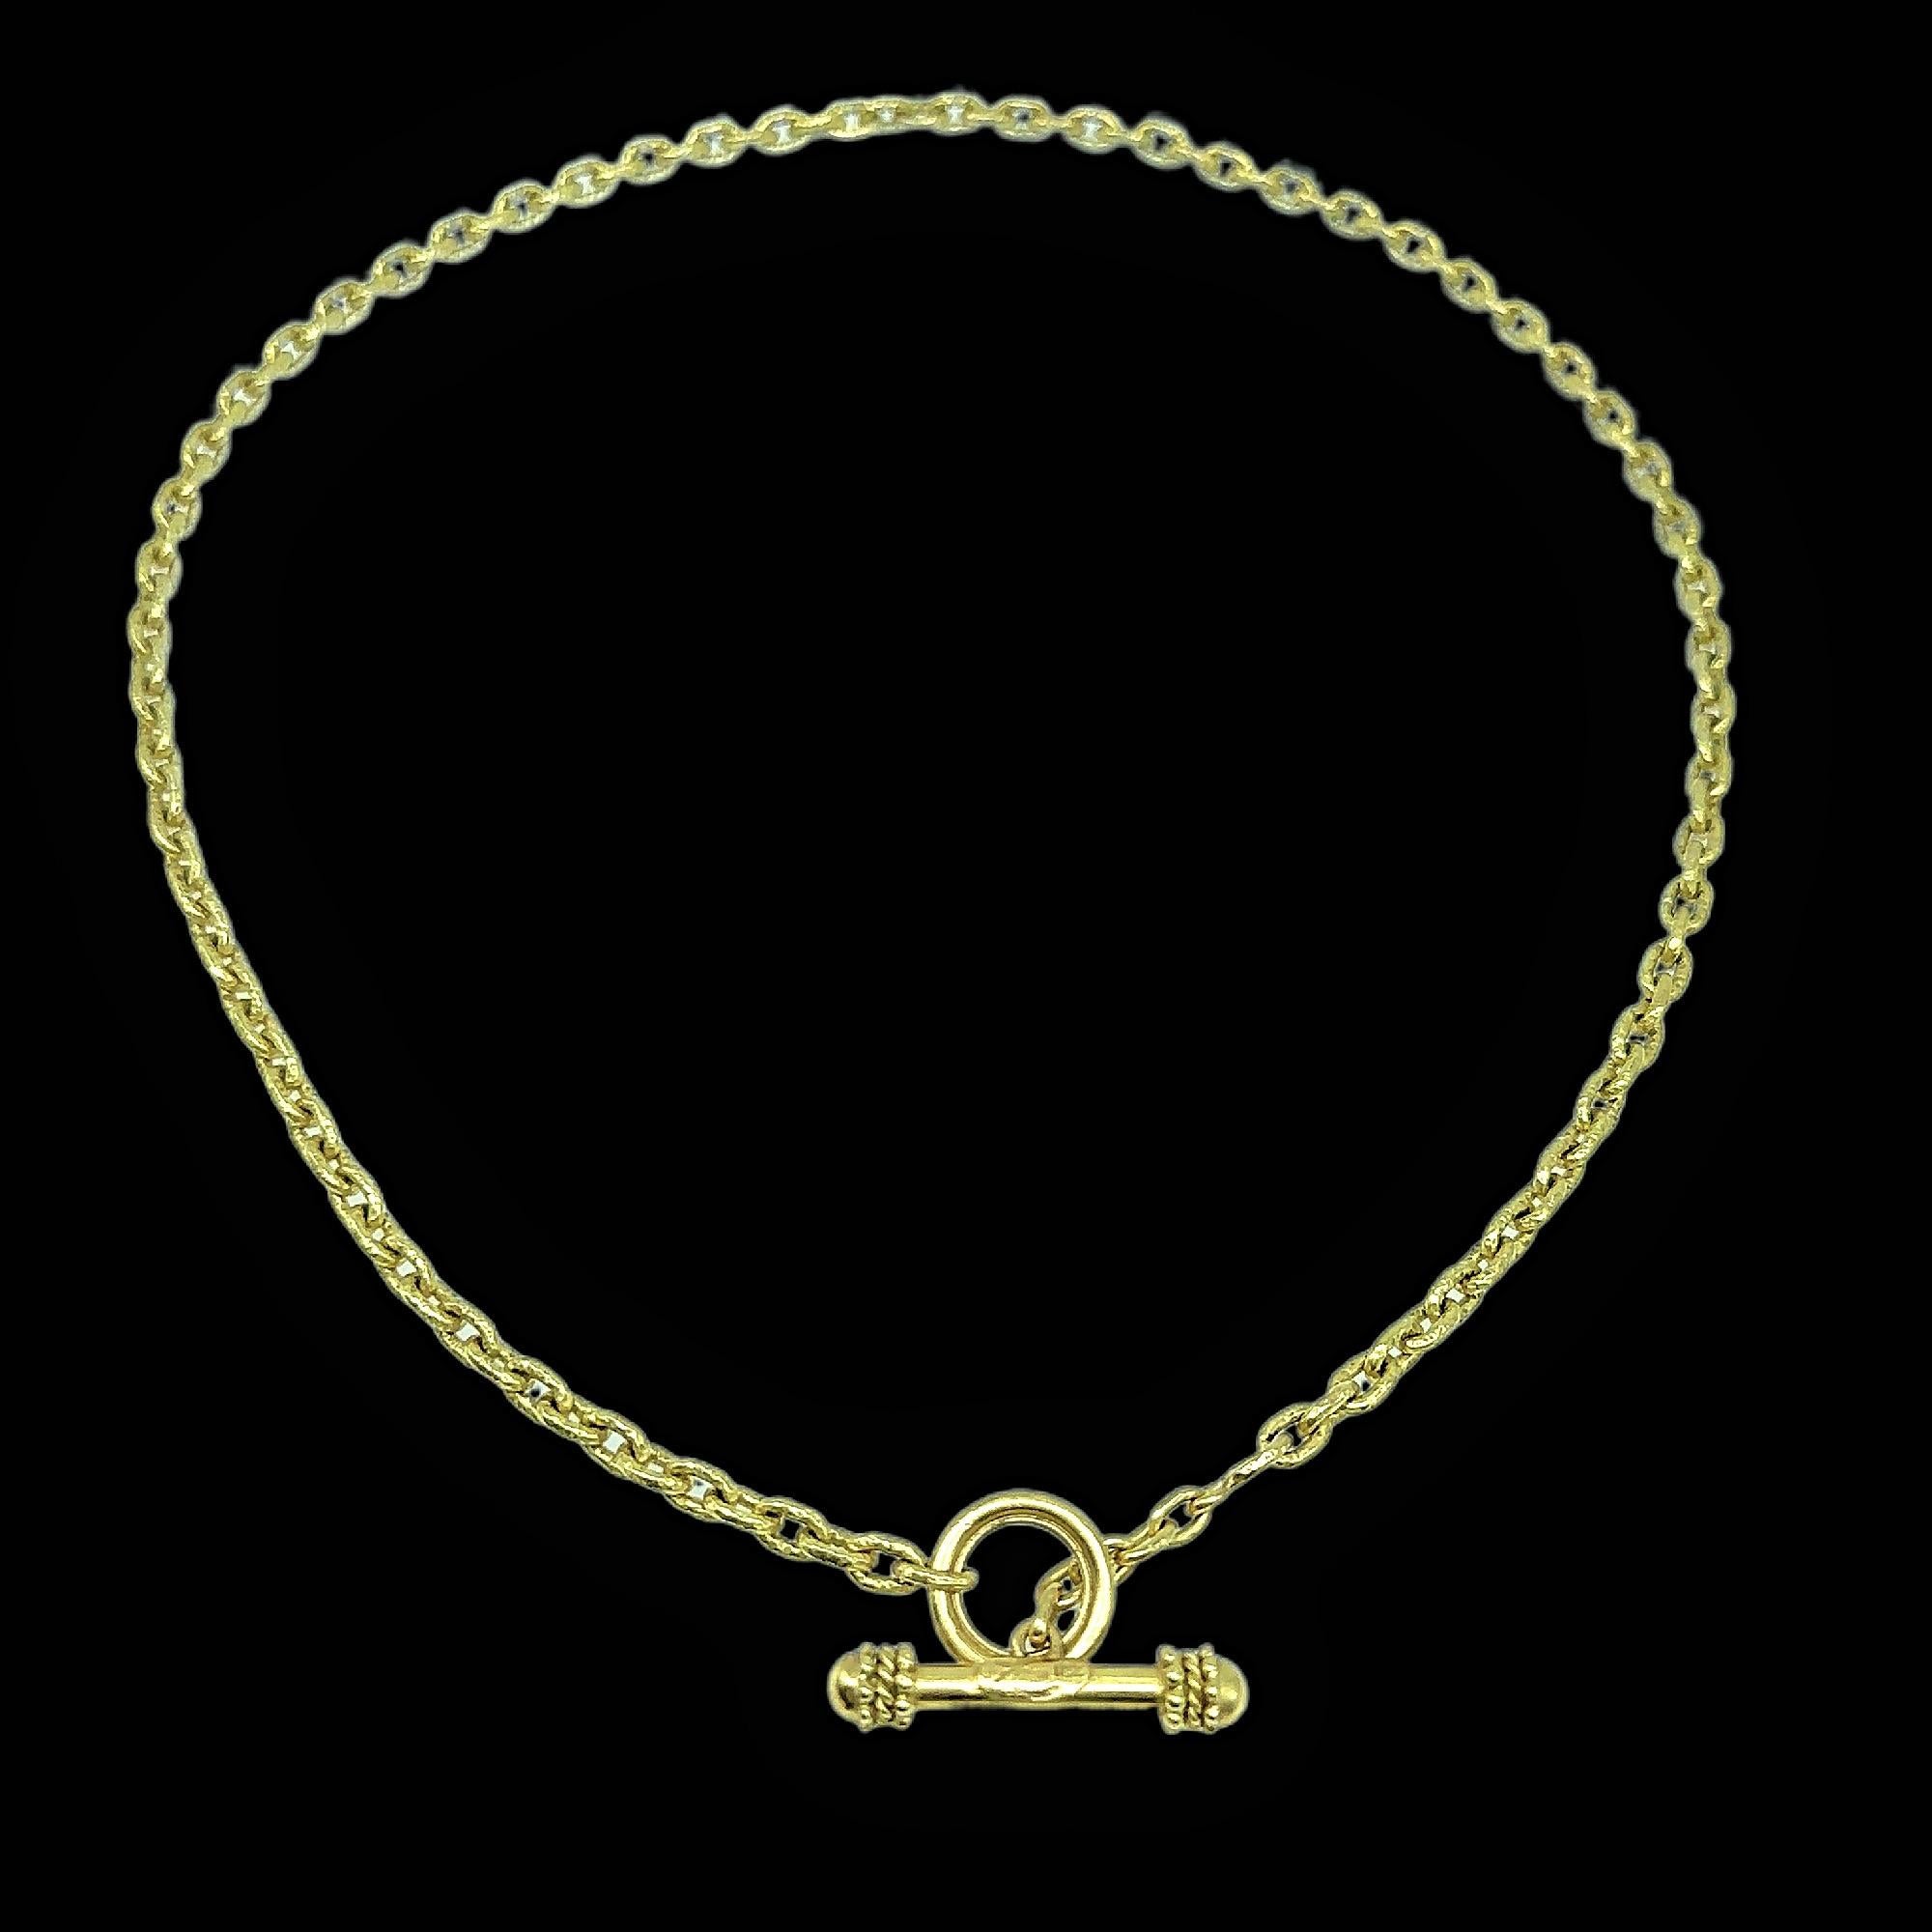 Elizabeth Locke Orvieta Hammered Gold Oval Link Necklace 19k Yg 6